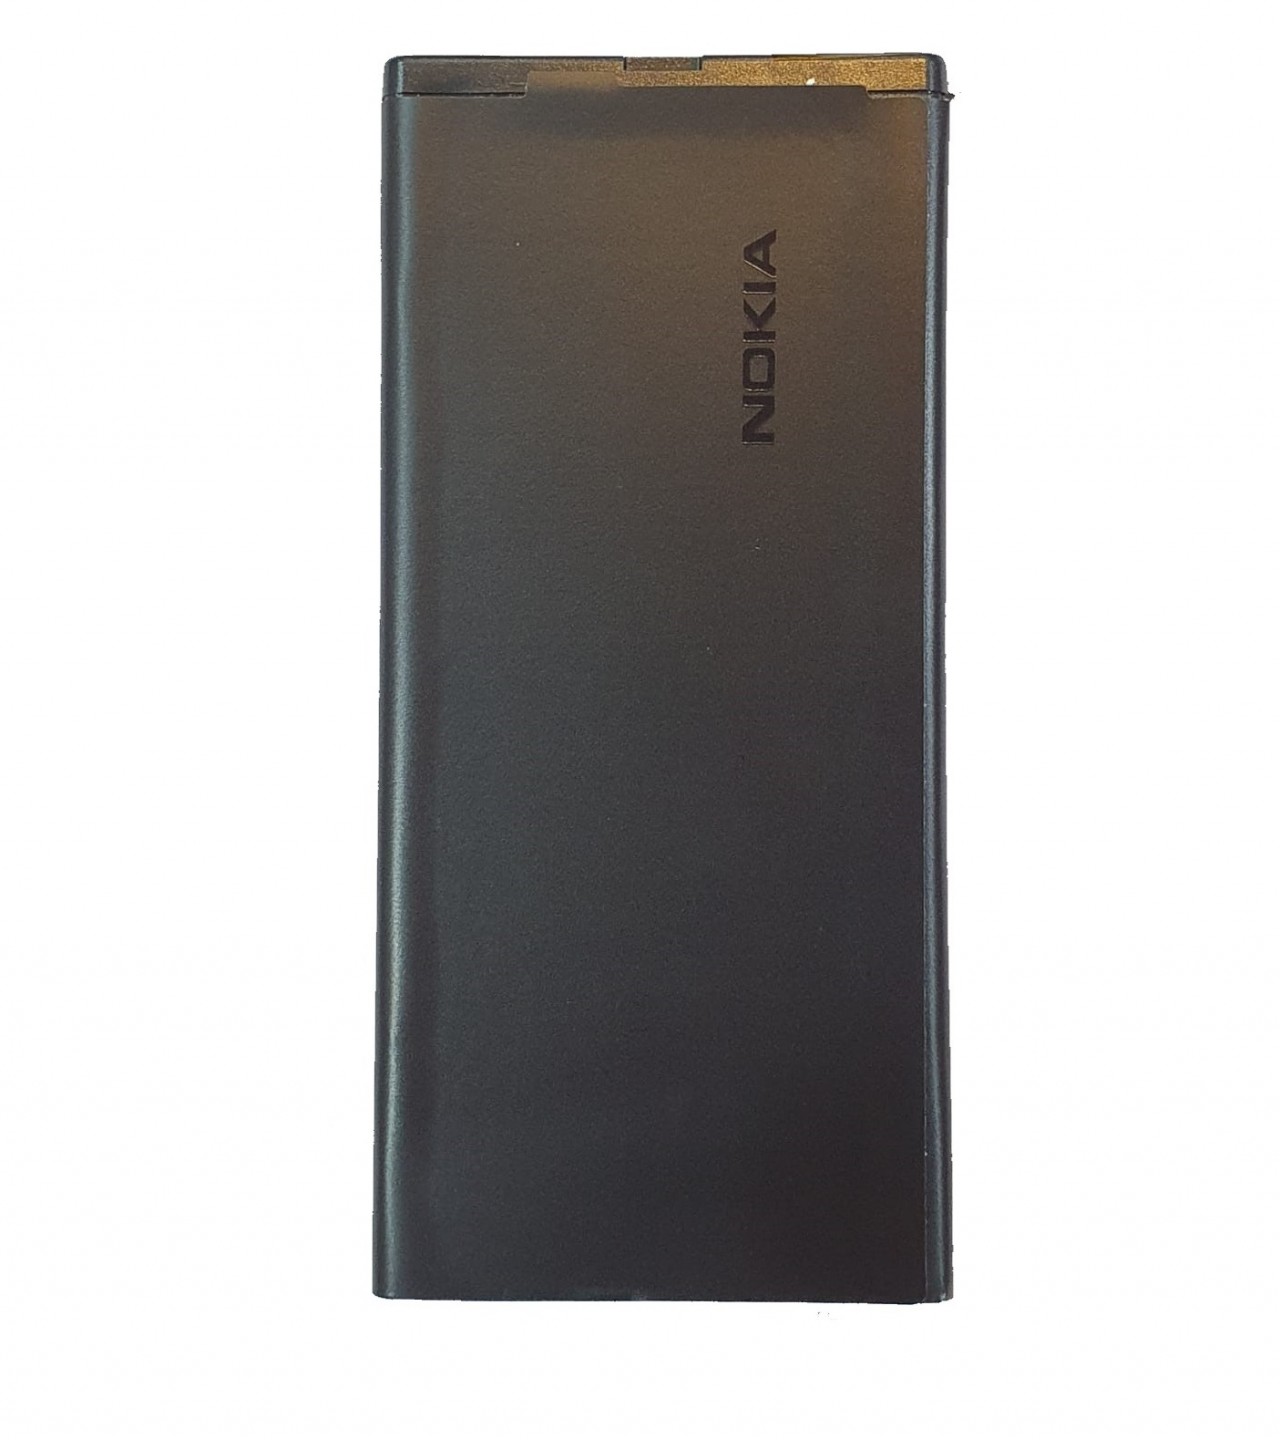 BV-T4B Battery for Nokia Lumia 640XL RM-1096 RM-1062 RM-1063 RM-1064 RM-1066